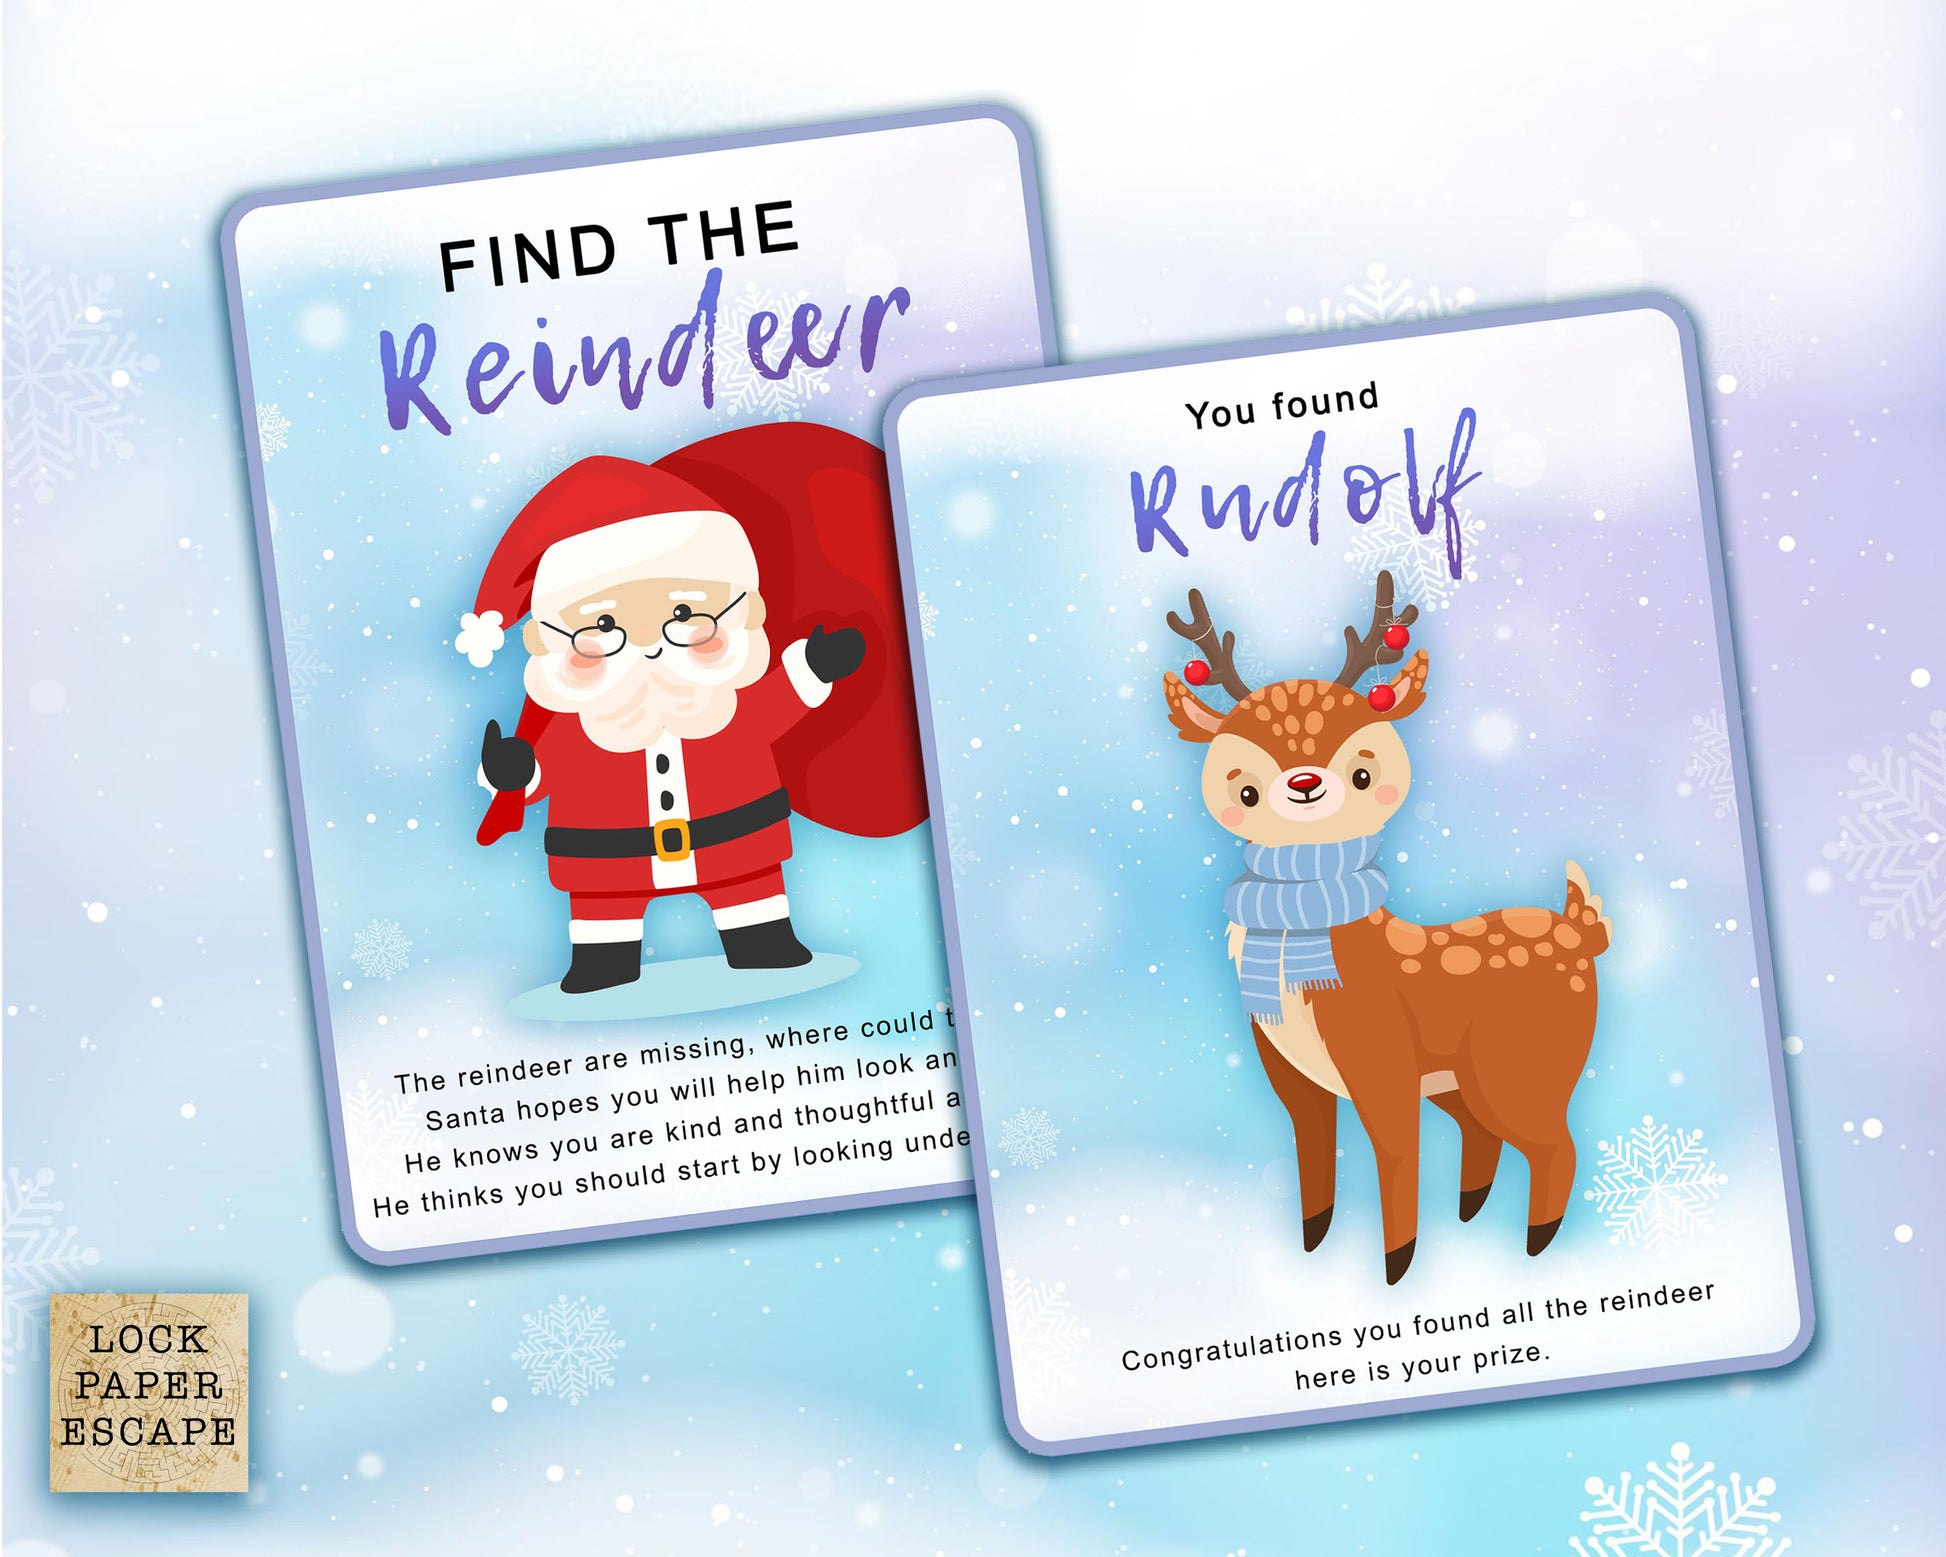 Santa and reindeer treasure hunt clue cards